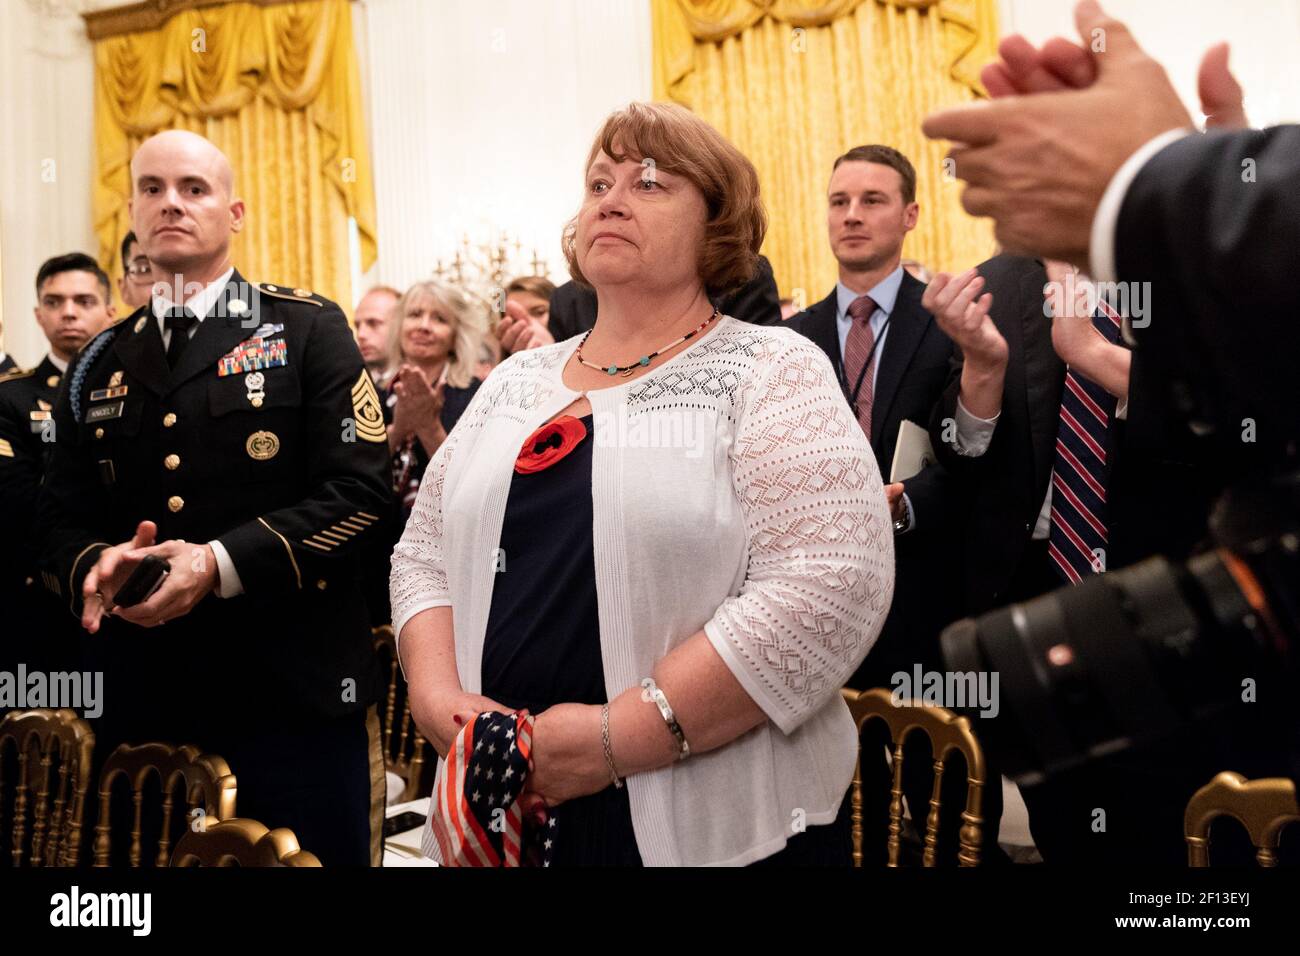 Un membre de la famille Gold Star est reconnu par le président Donald Trump lors de sa déclaration lors de la cérémonie de la Médaille d'honneur du sergent d'état-major de l'armée américaine. David Bellavia le mardi 25 2019 juin dans la salle est de la Maison Blanche. Banque D'Images